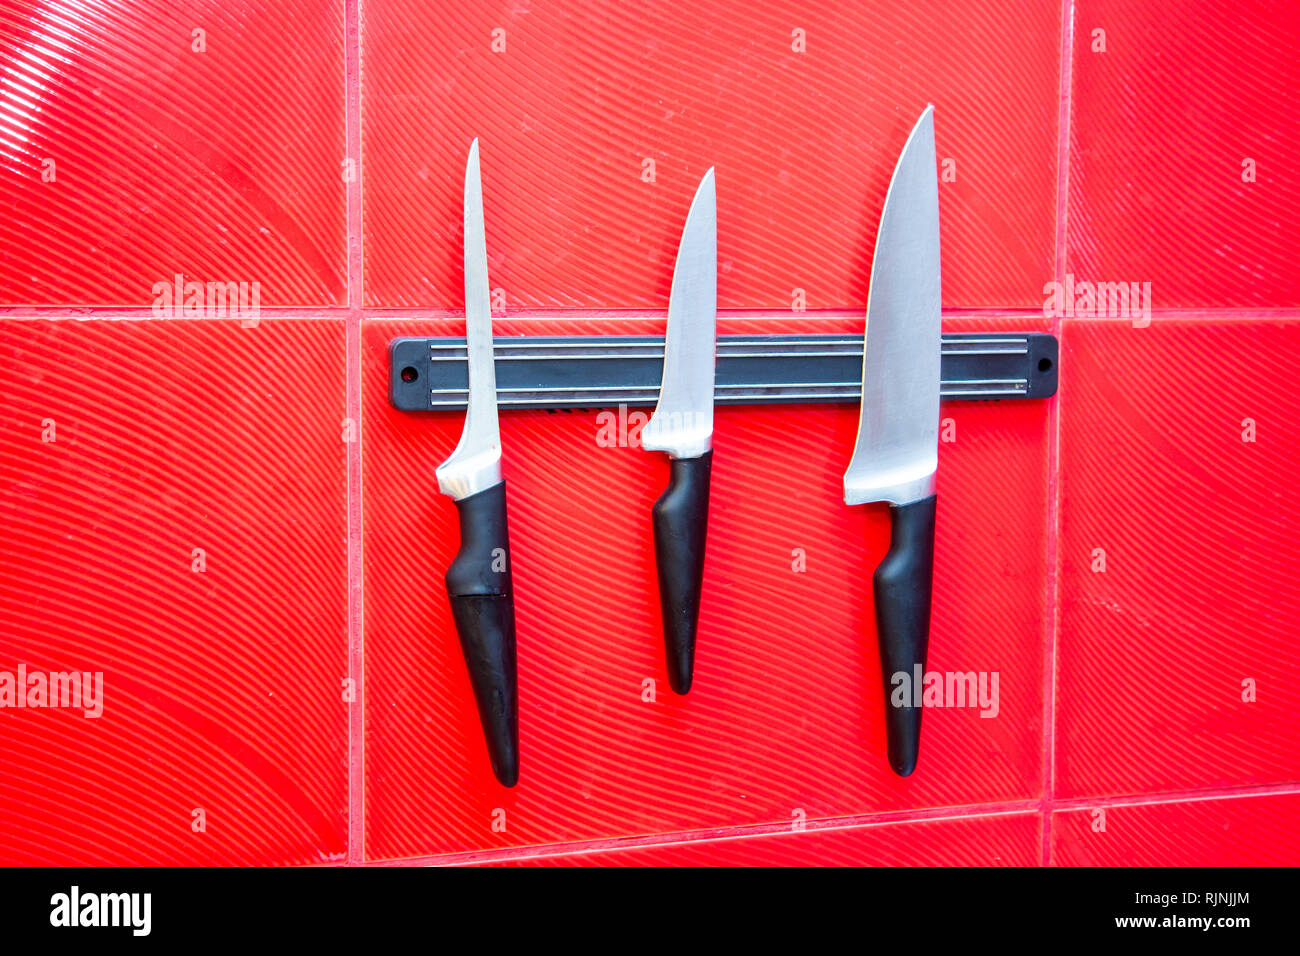 Qualitativ hochwertige Küche kochen Messer Werkzeuge auf einer Magnettafel hängen an der Roten Wand Stockfoto